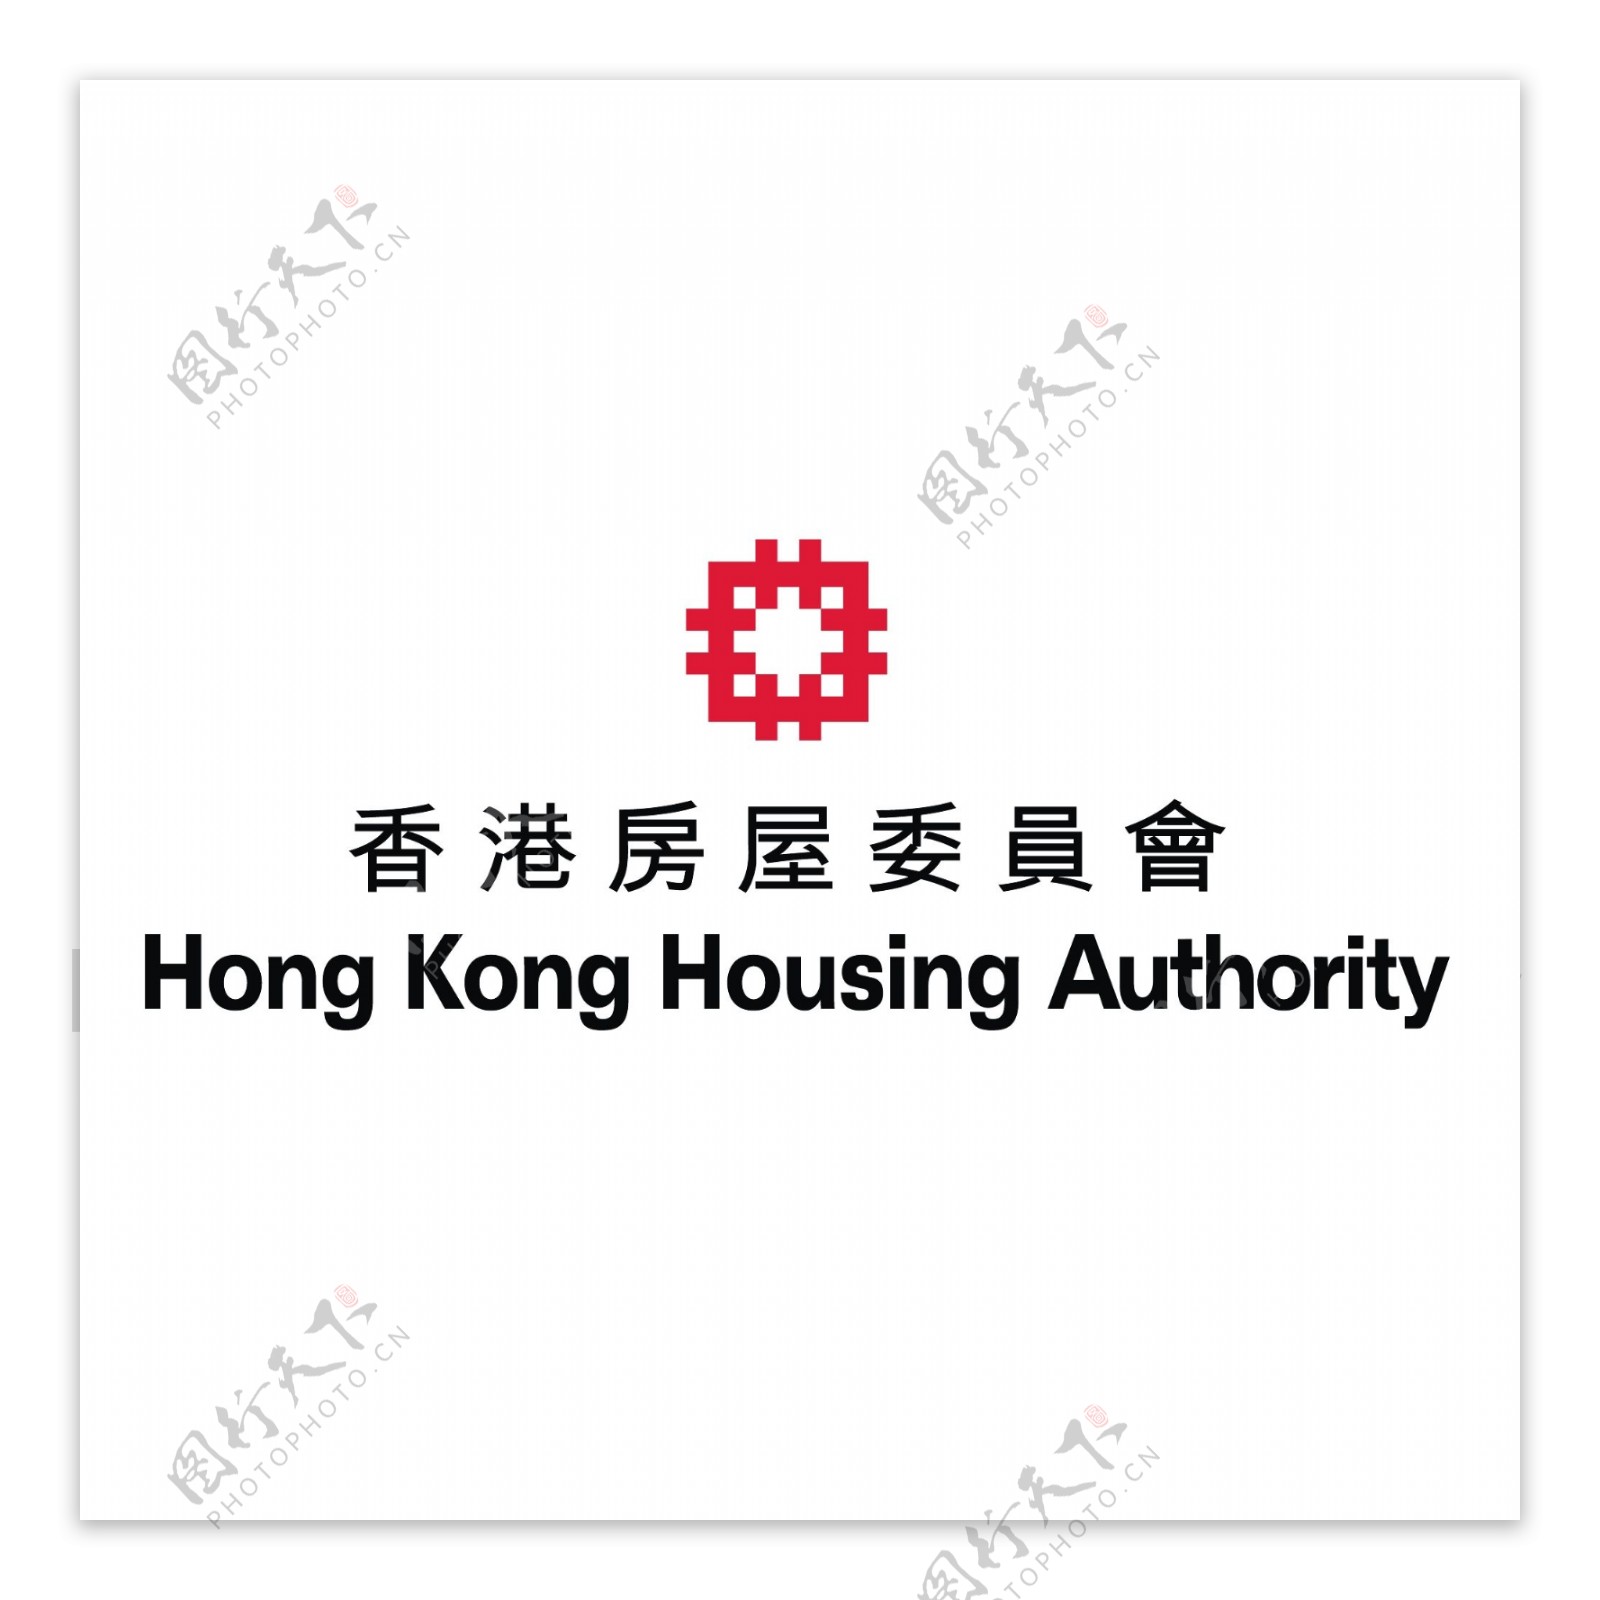 香港房屋委员会